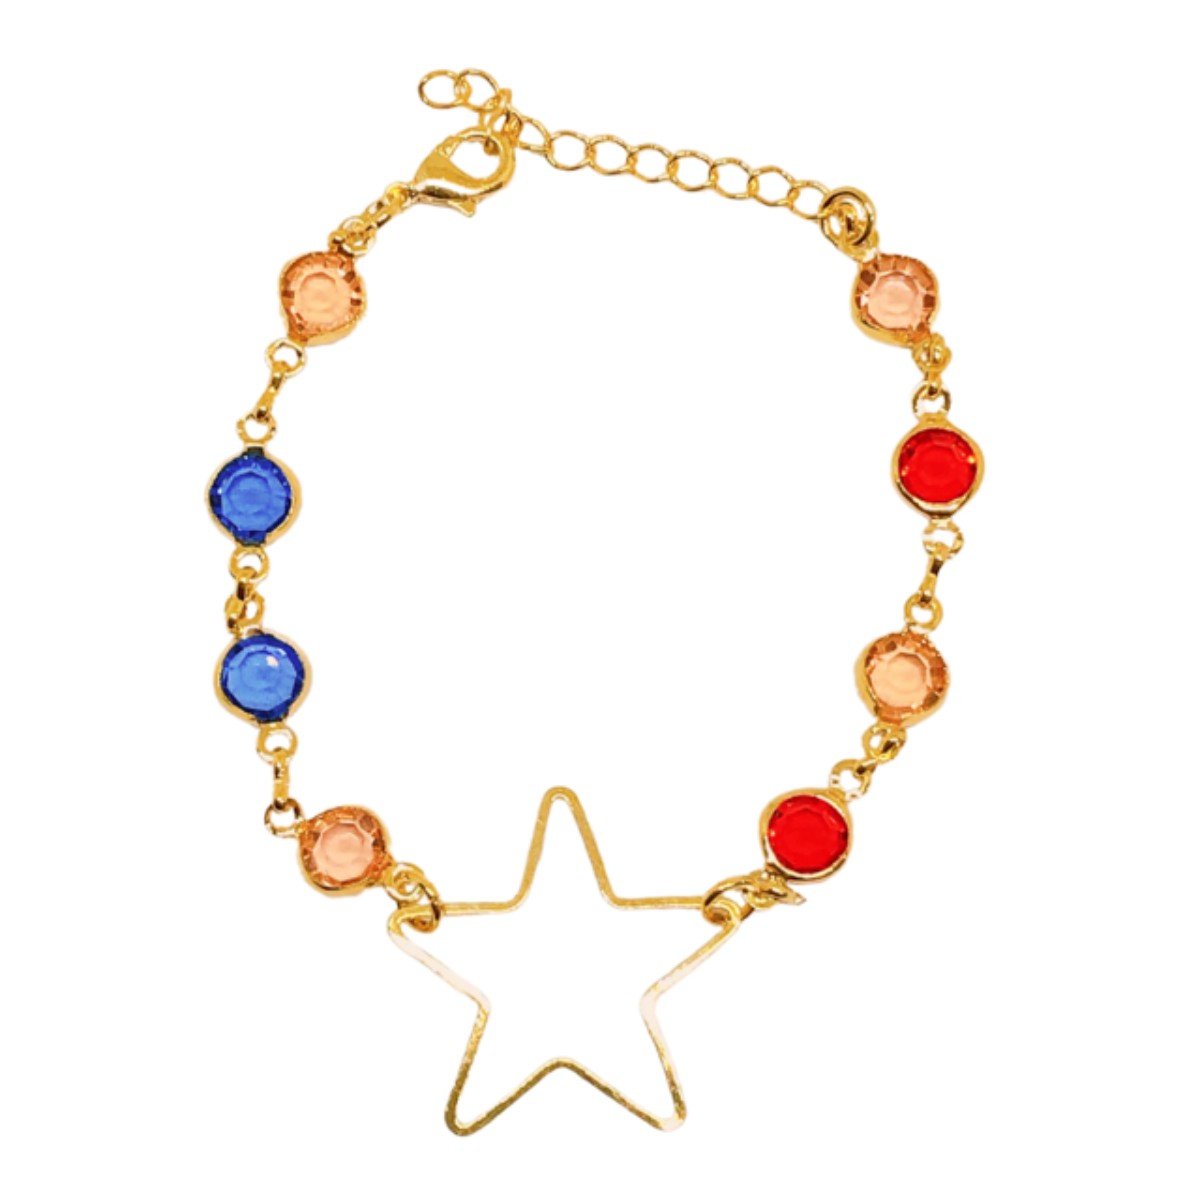 Pulseira dourada com estrela e pedras coloridas sortidas